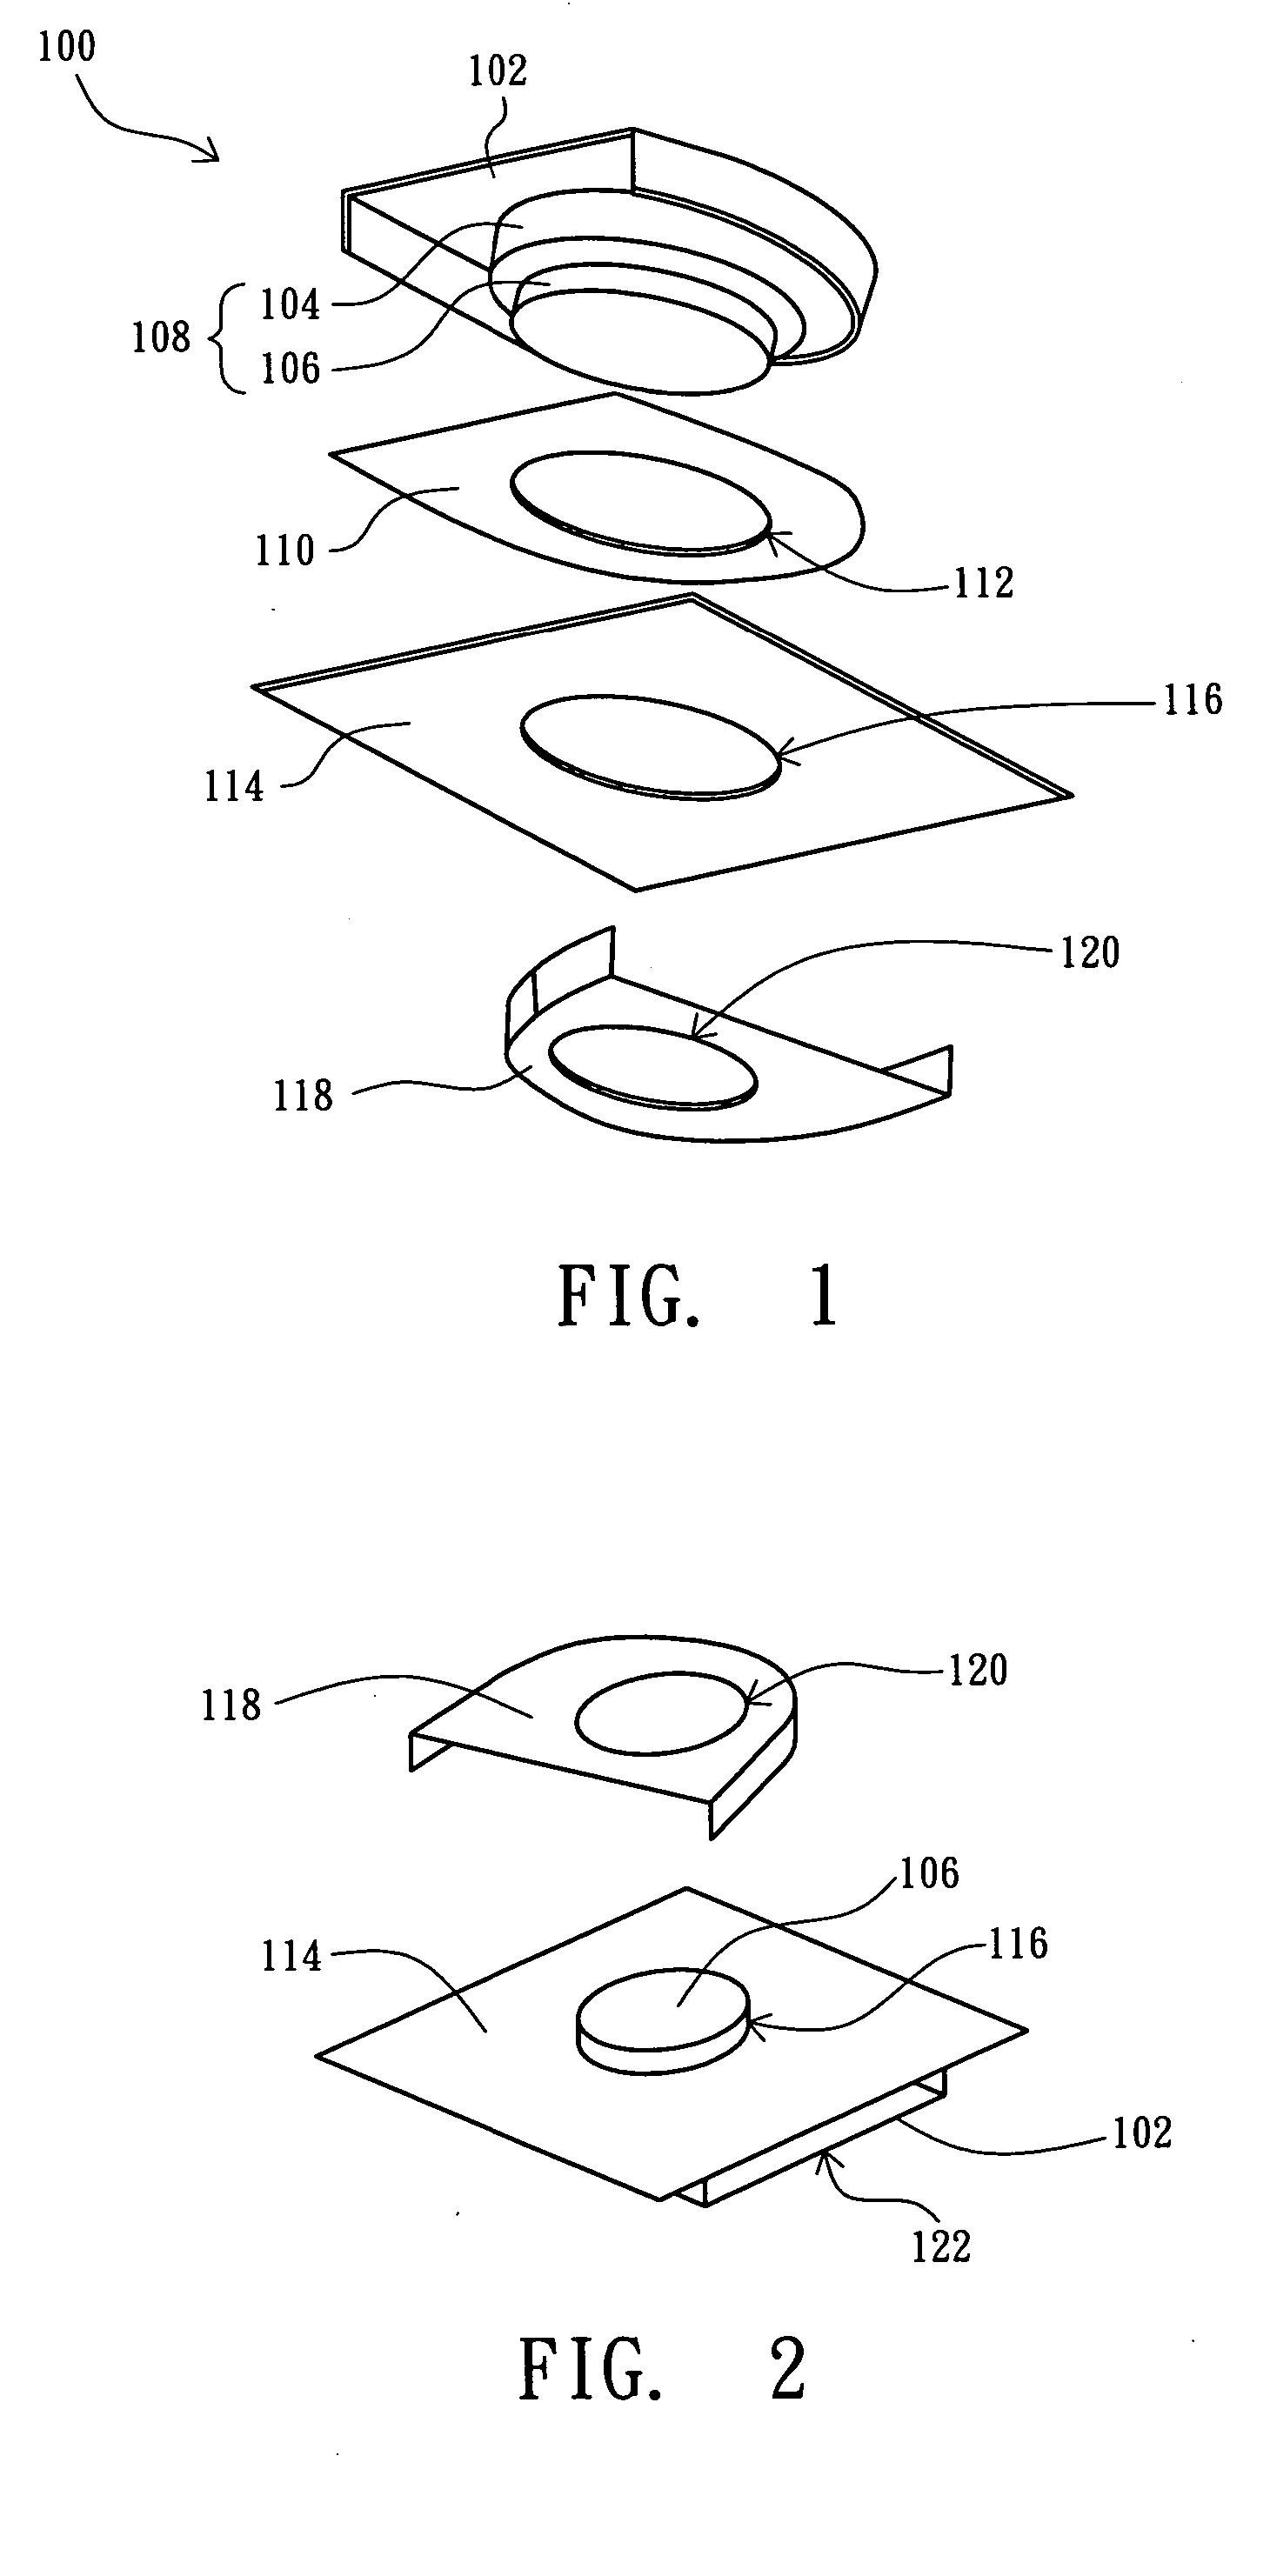 Malti-layer and multi-direction fan device